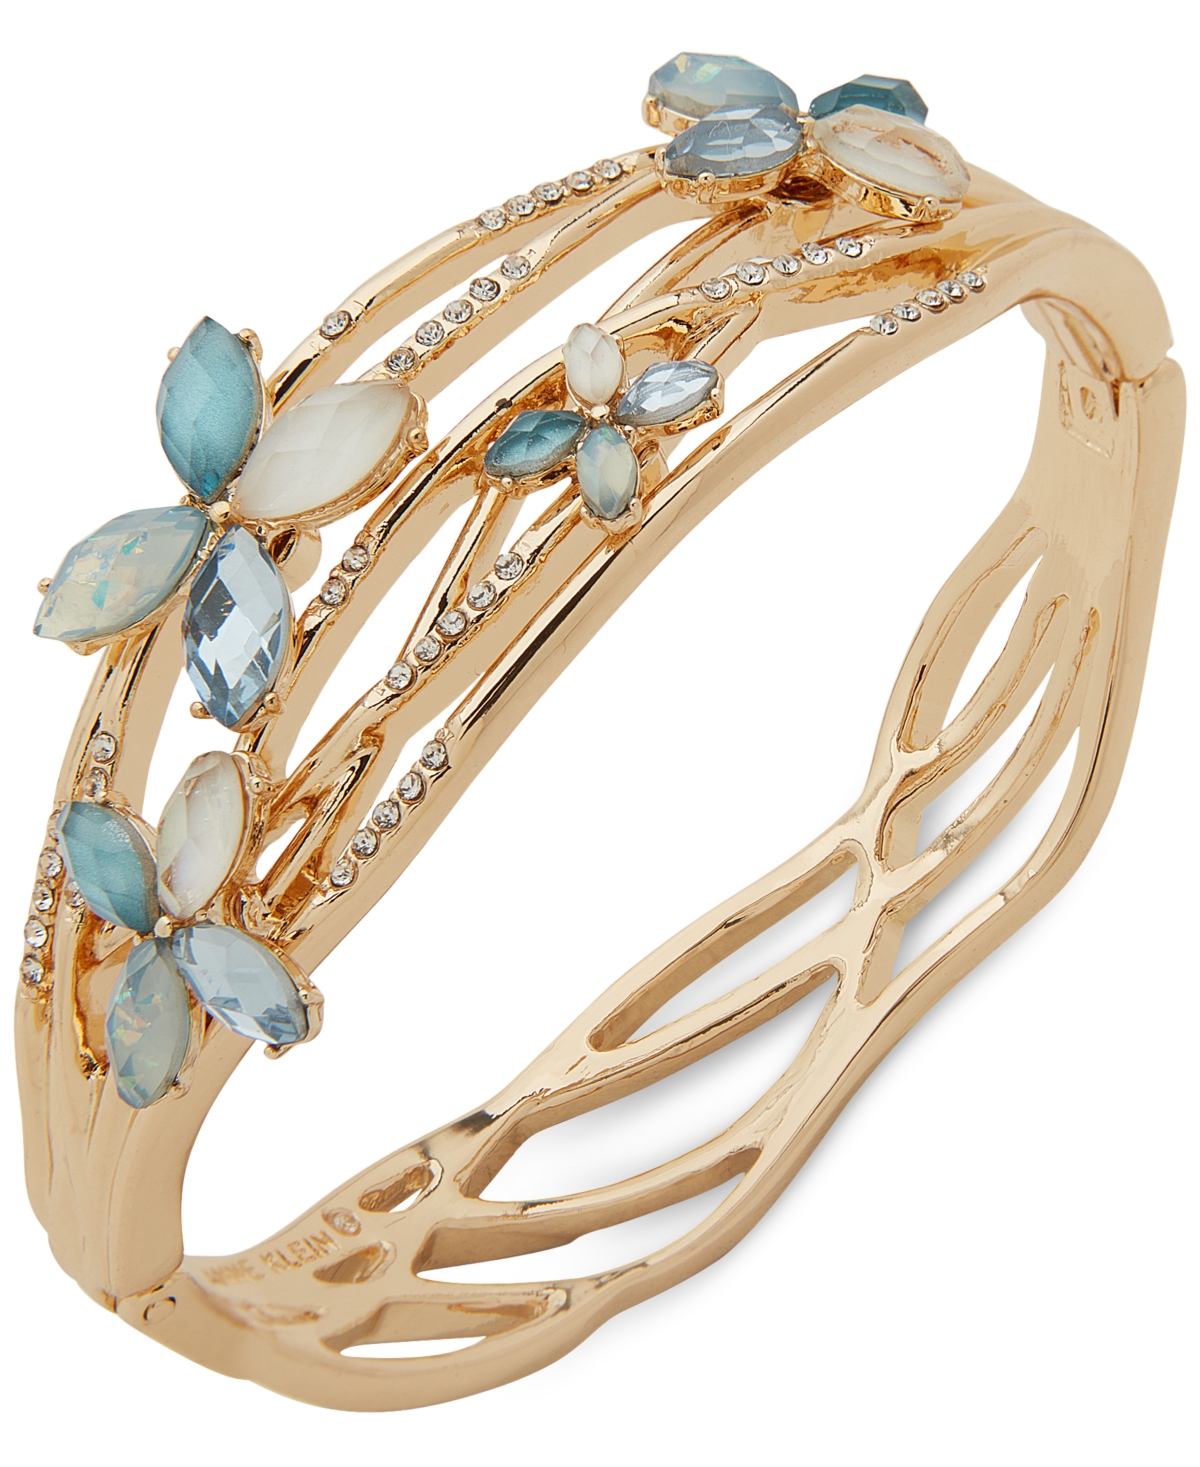 Gold-Tone Mixed Stone Flower Bangle Bracelet - Blue